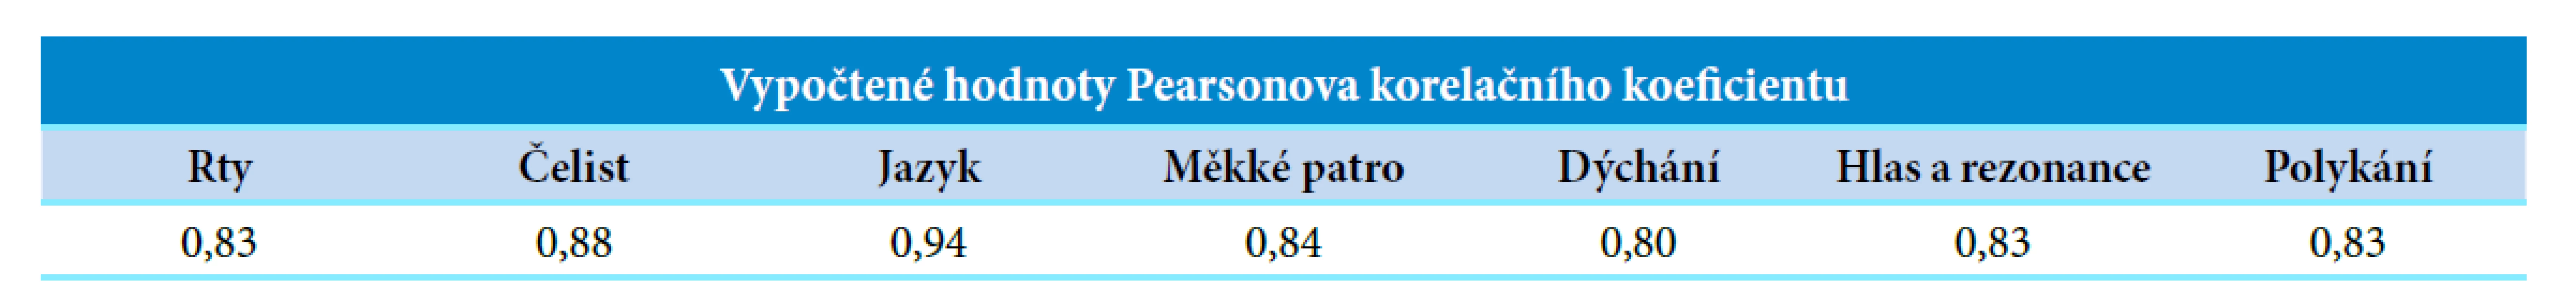 Vypočtené hodnoty Pearsonova korelačního koeficientu poměřením Dysartrického profilu a Orofaciálního profilu u vybraných
orofaciálních oblastí